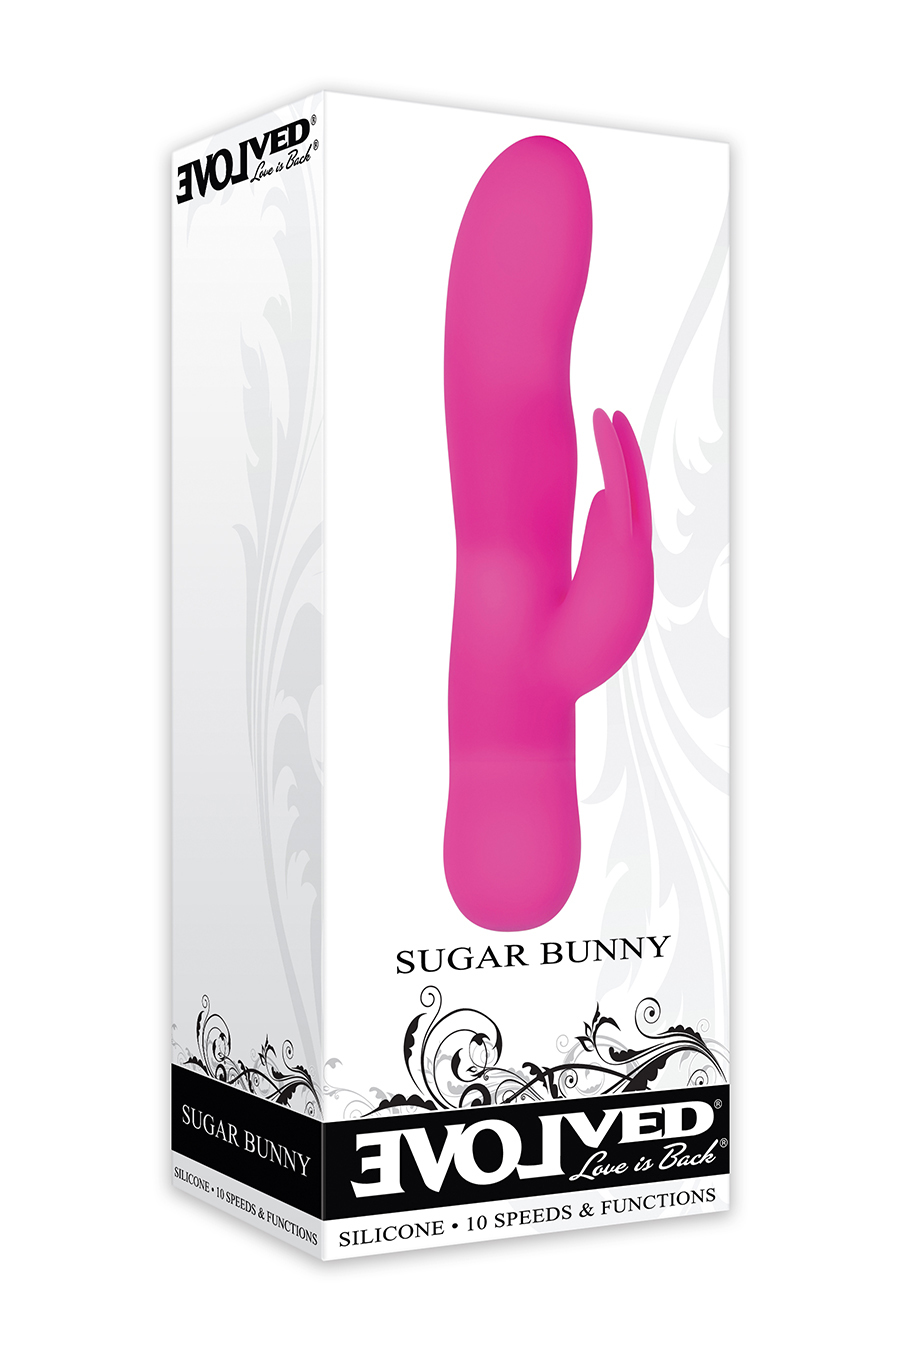 Sugar-bunny-front.jpg